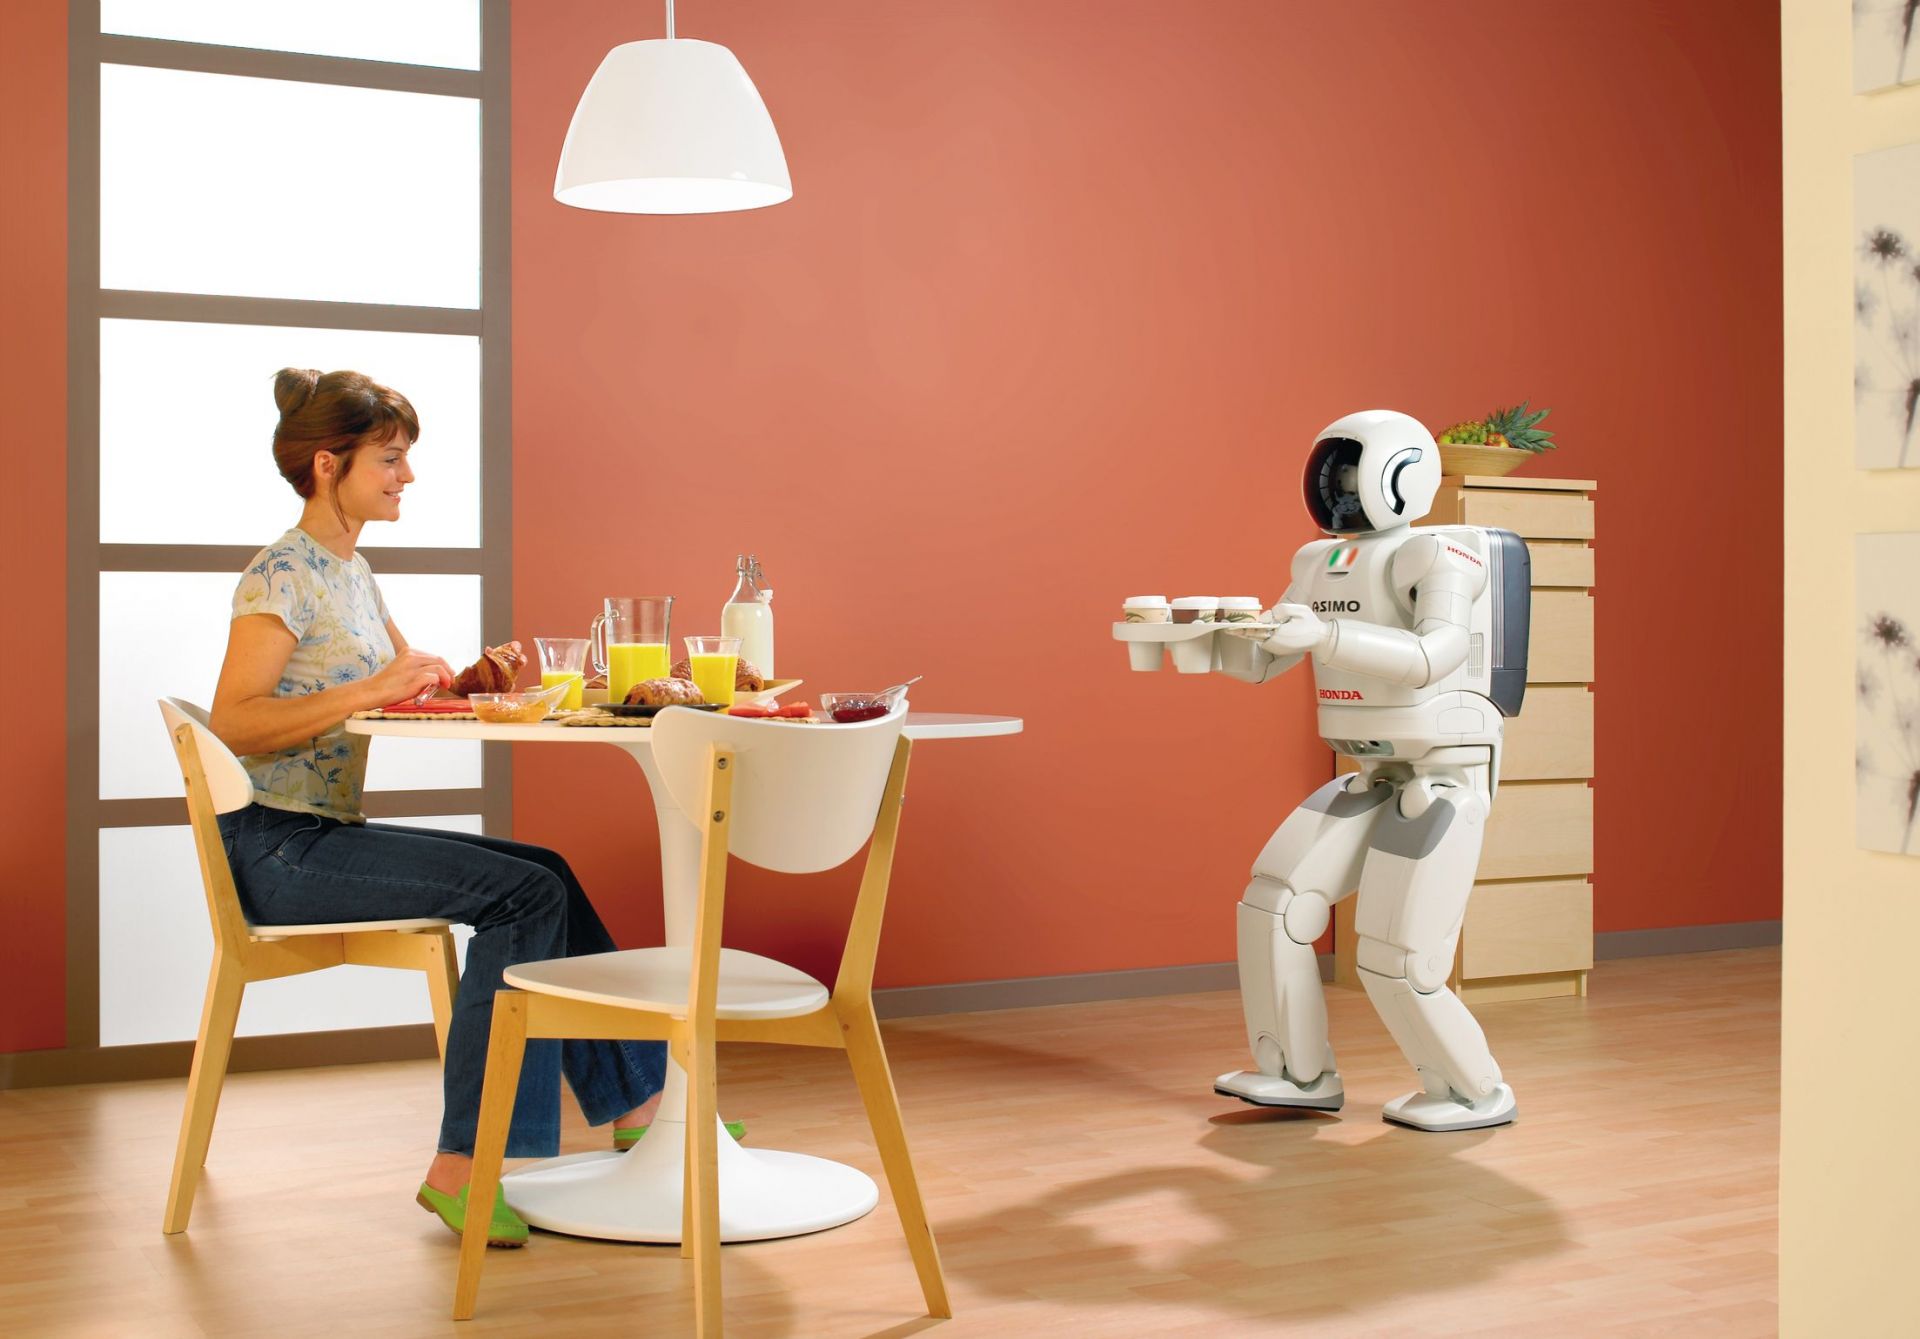 El Futuro De Los Robots En Nuestros Hogares • Autodesk Journal